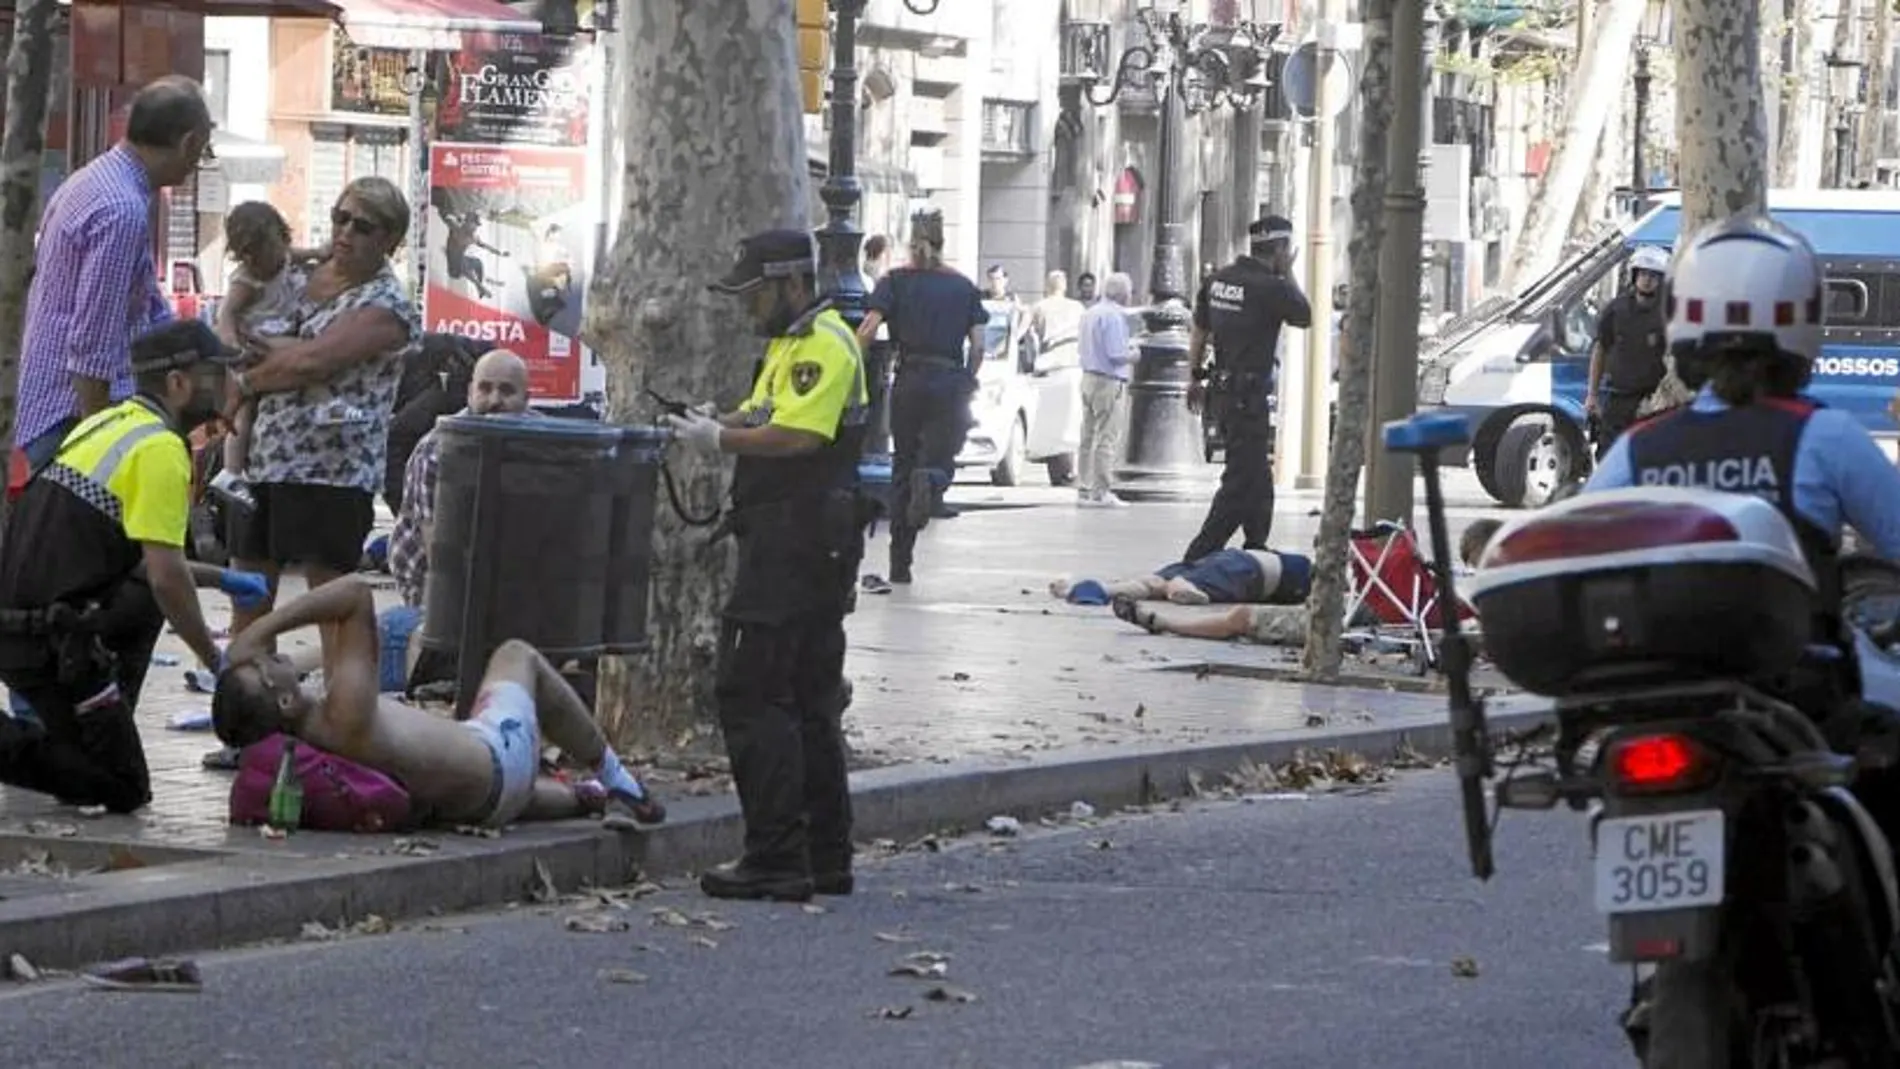 Los atentados en Barcelona y Cambrils causaron una enorme sutura emocional que aún no se ha superado en Cataluña